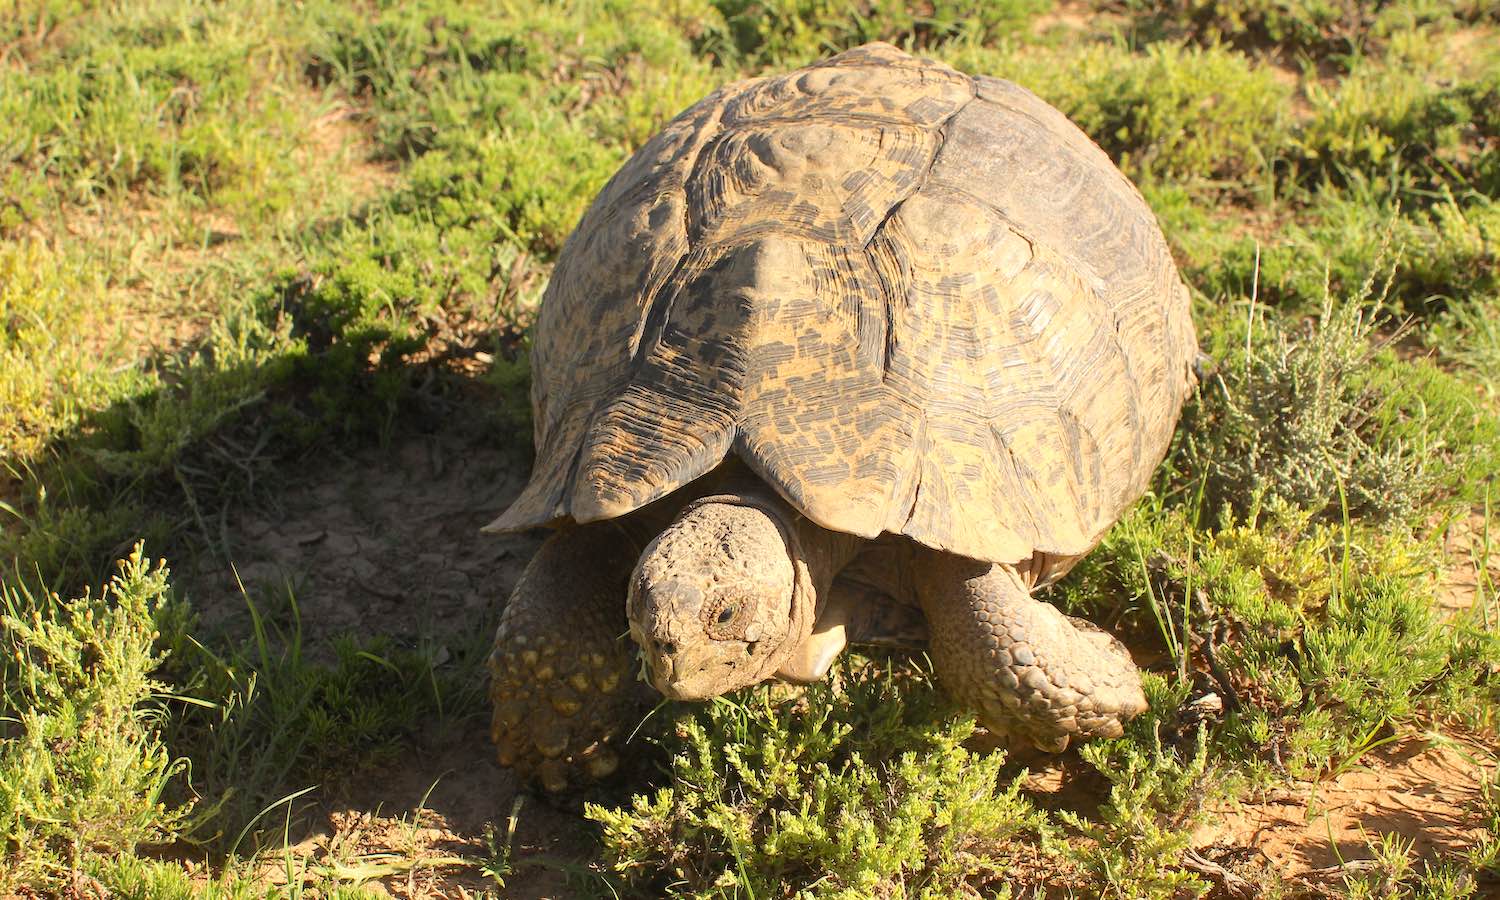 A tortoise on grass.